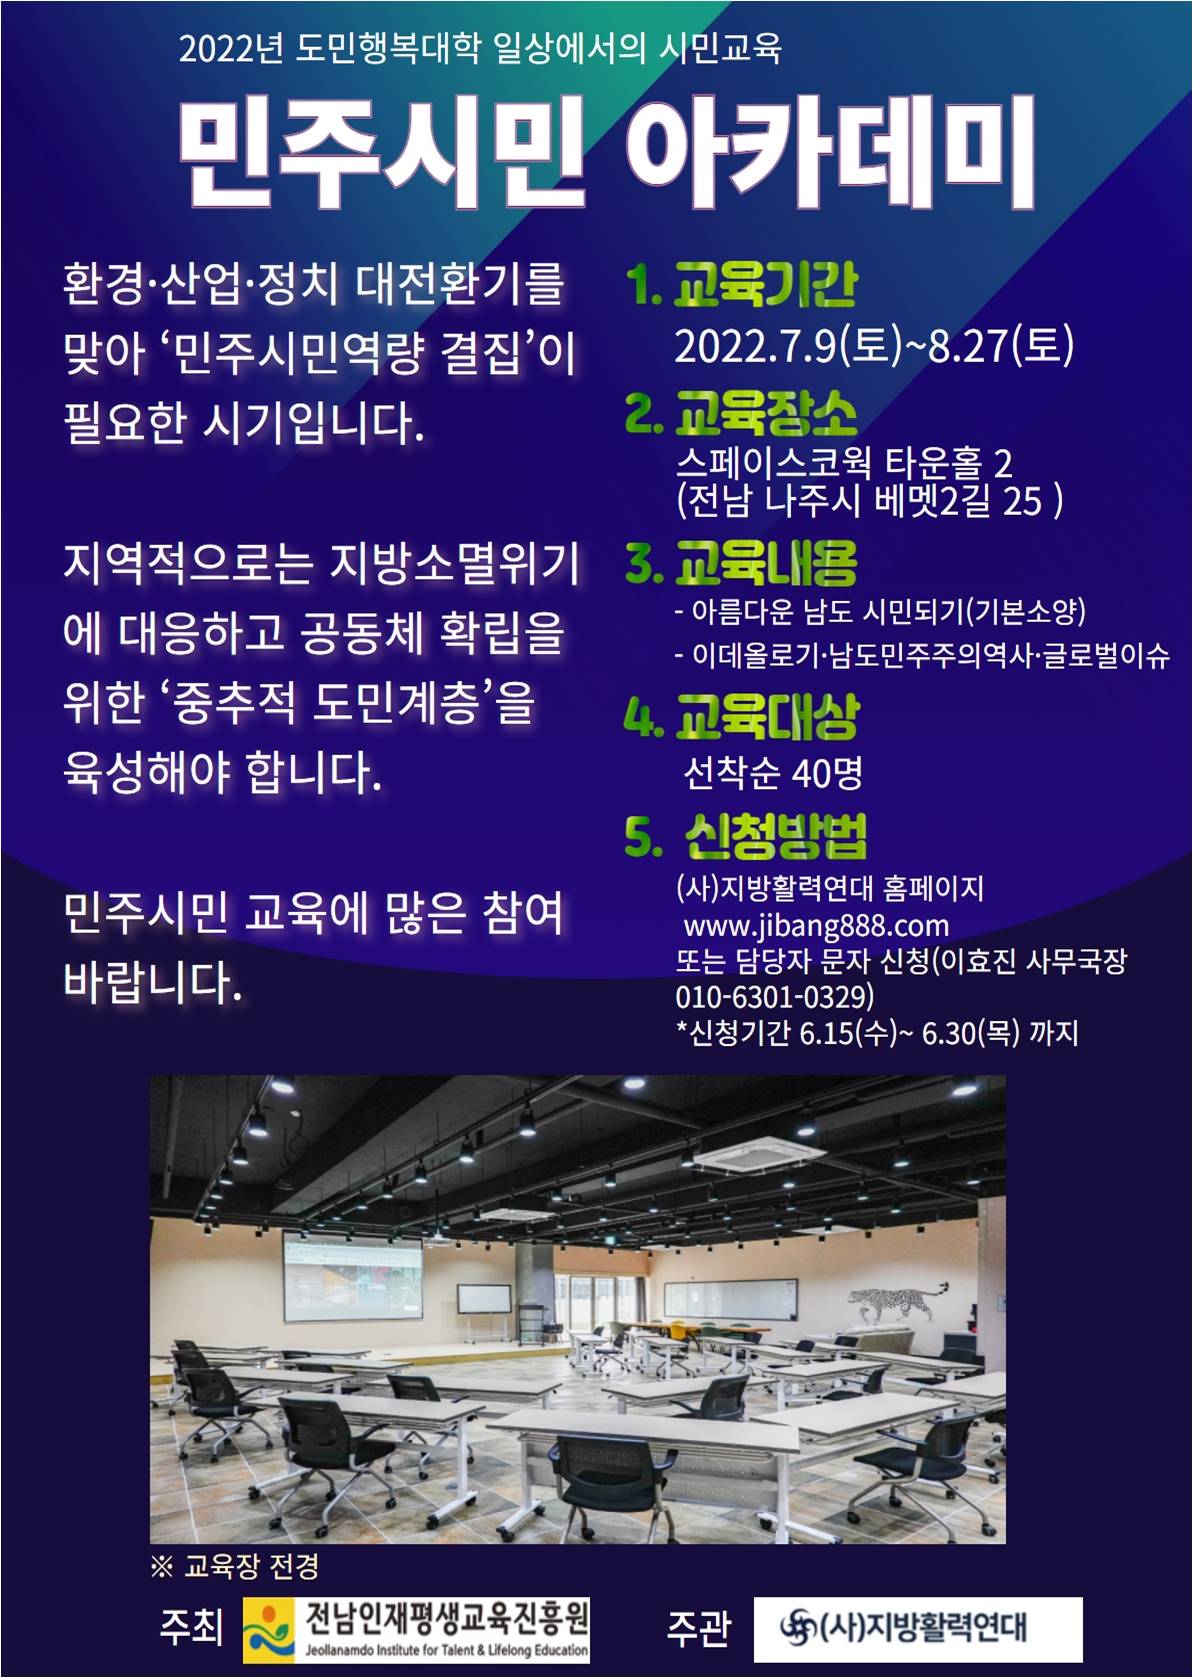 [모집 안내] 도민행복대학 시민교육 수강생 모집(지방활력연대)  1